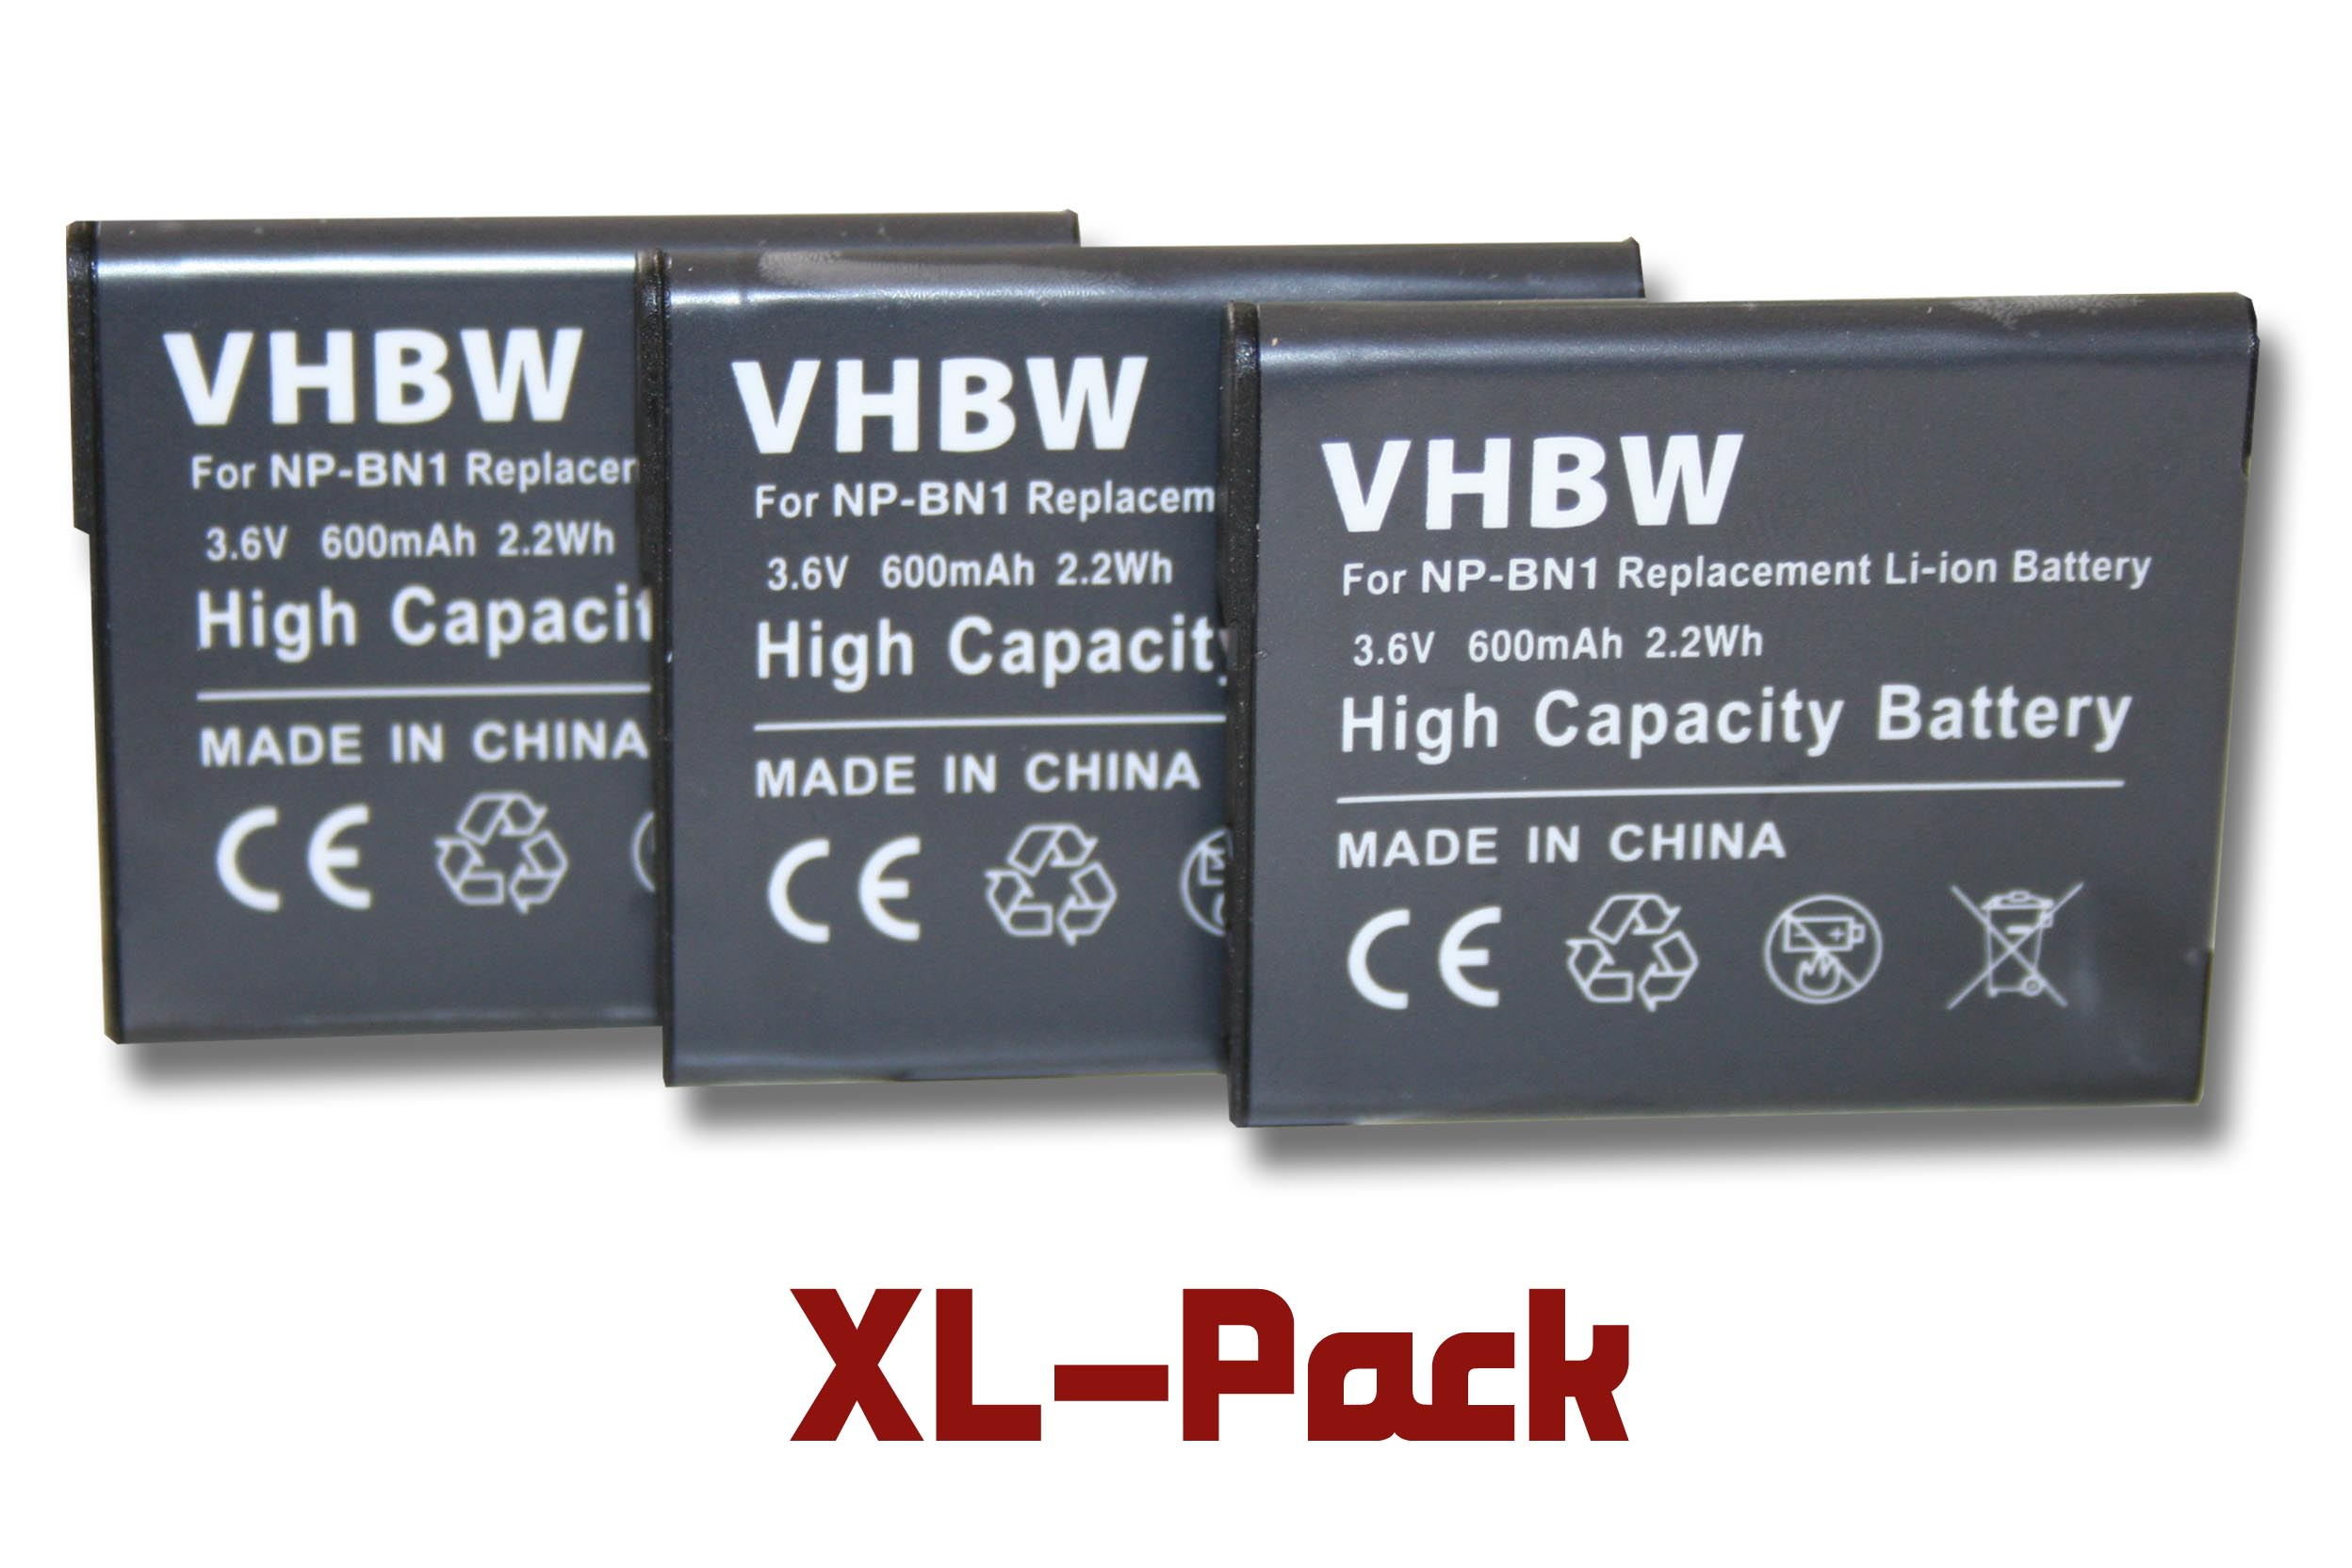 DSC-TX9, mit DSC-W510 Sony Li-Ion kompatibel DSC-W310, Kamera, DSC-W350, - DSC-W330, Cybershot 600 VHBW Akku Volt, 3.6 DSC-W380, DSC-W320,